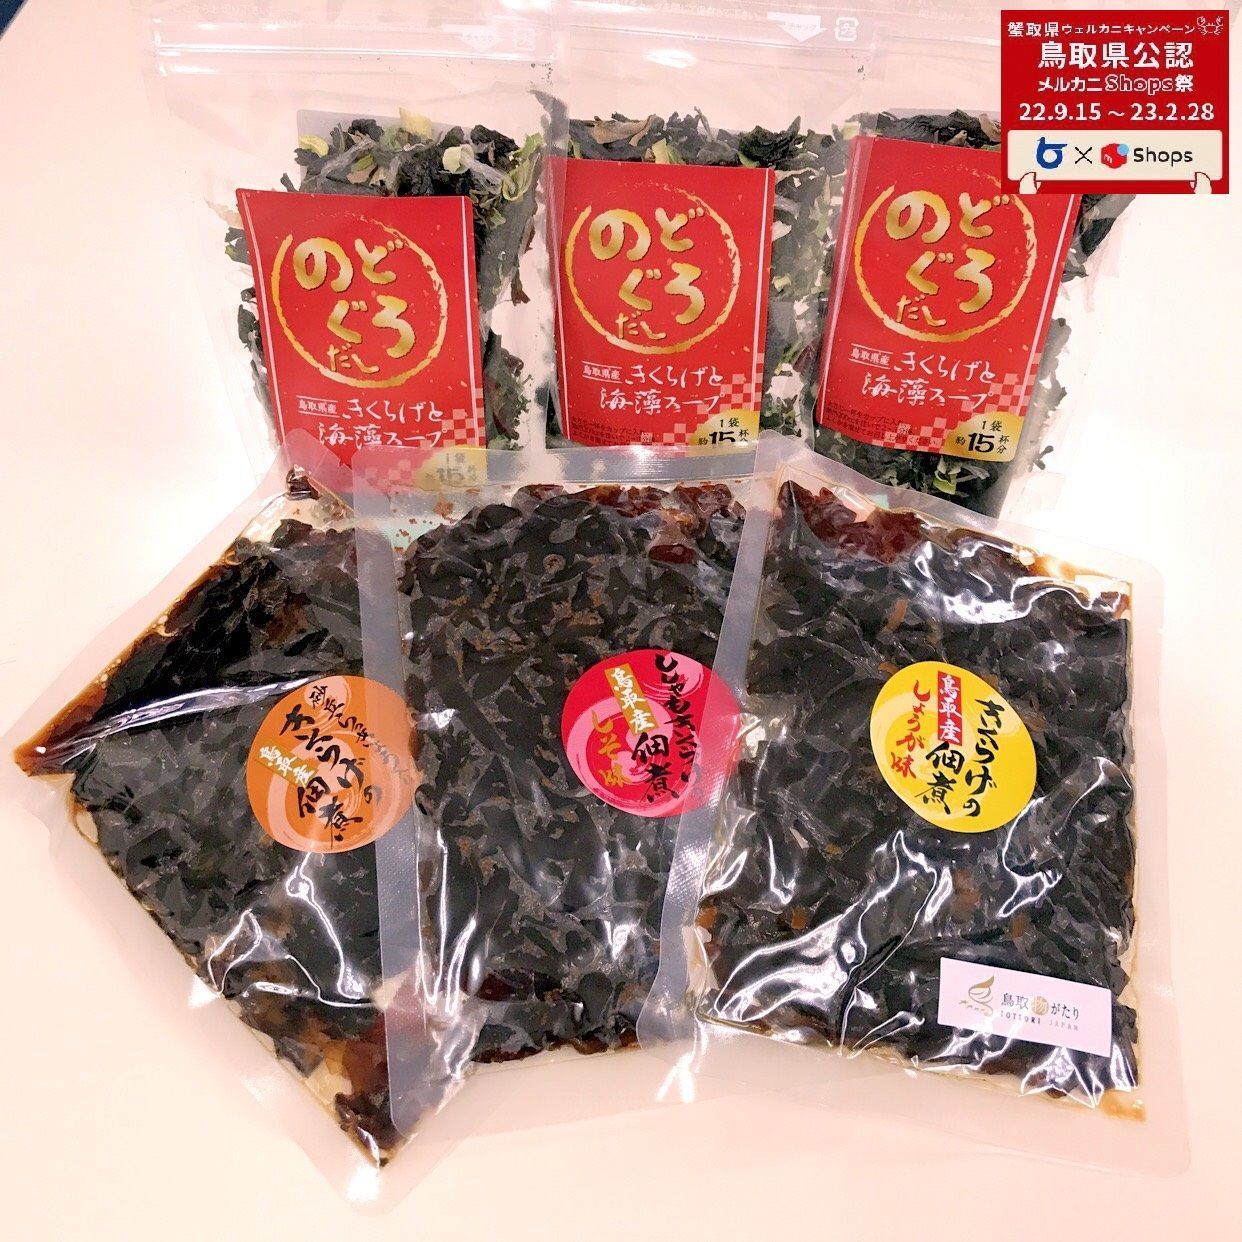 【メルカニ】「鳥取県産」きくらげの佃煮3種と、のどぐろだしきくらげと海藻スープ♪-0